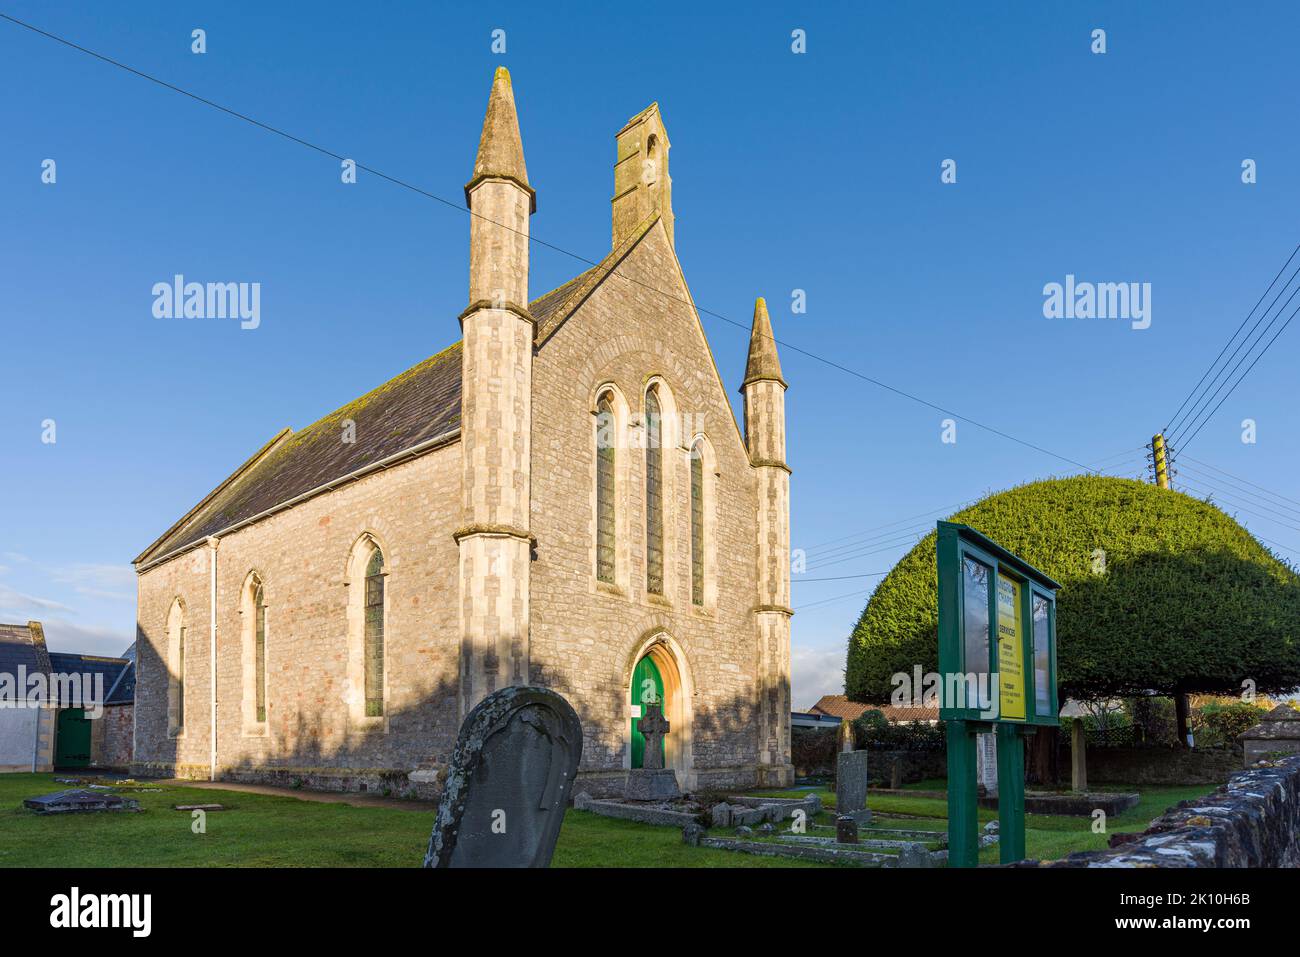 La chapelle du 19th siècle dans le village de Langford, demeure de l'église évangélique de Langford, dans le nord du Somerset, en Angleterre. Banque D'Images